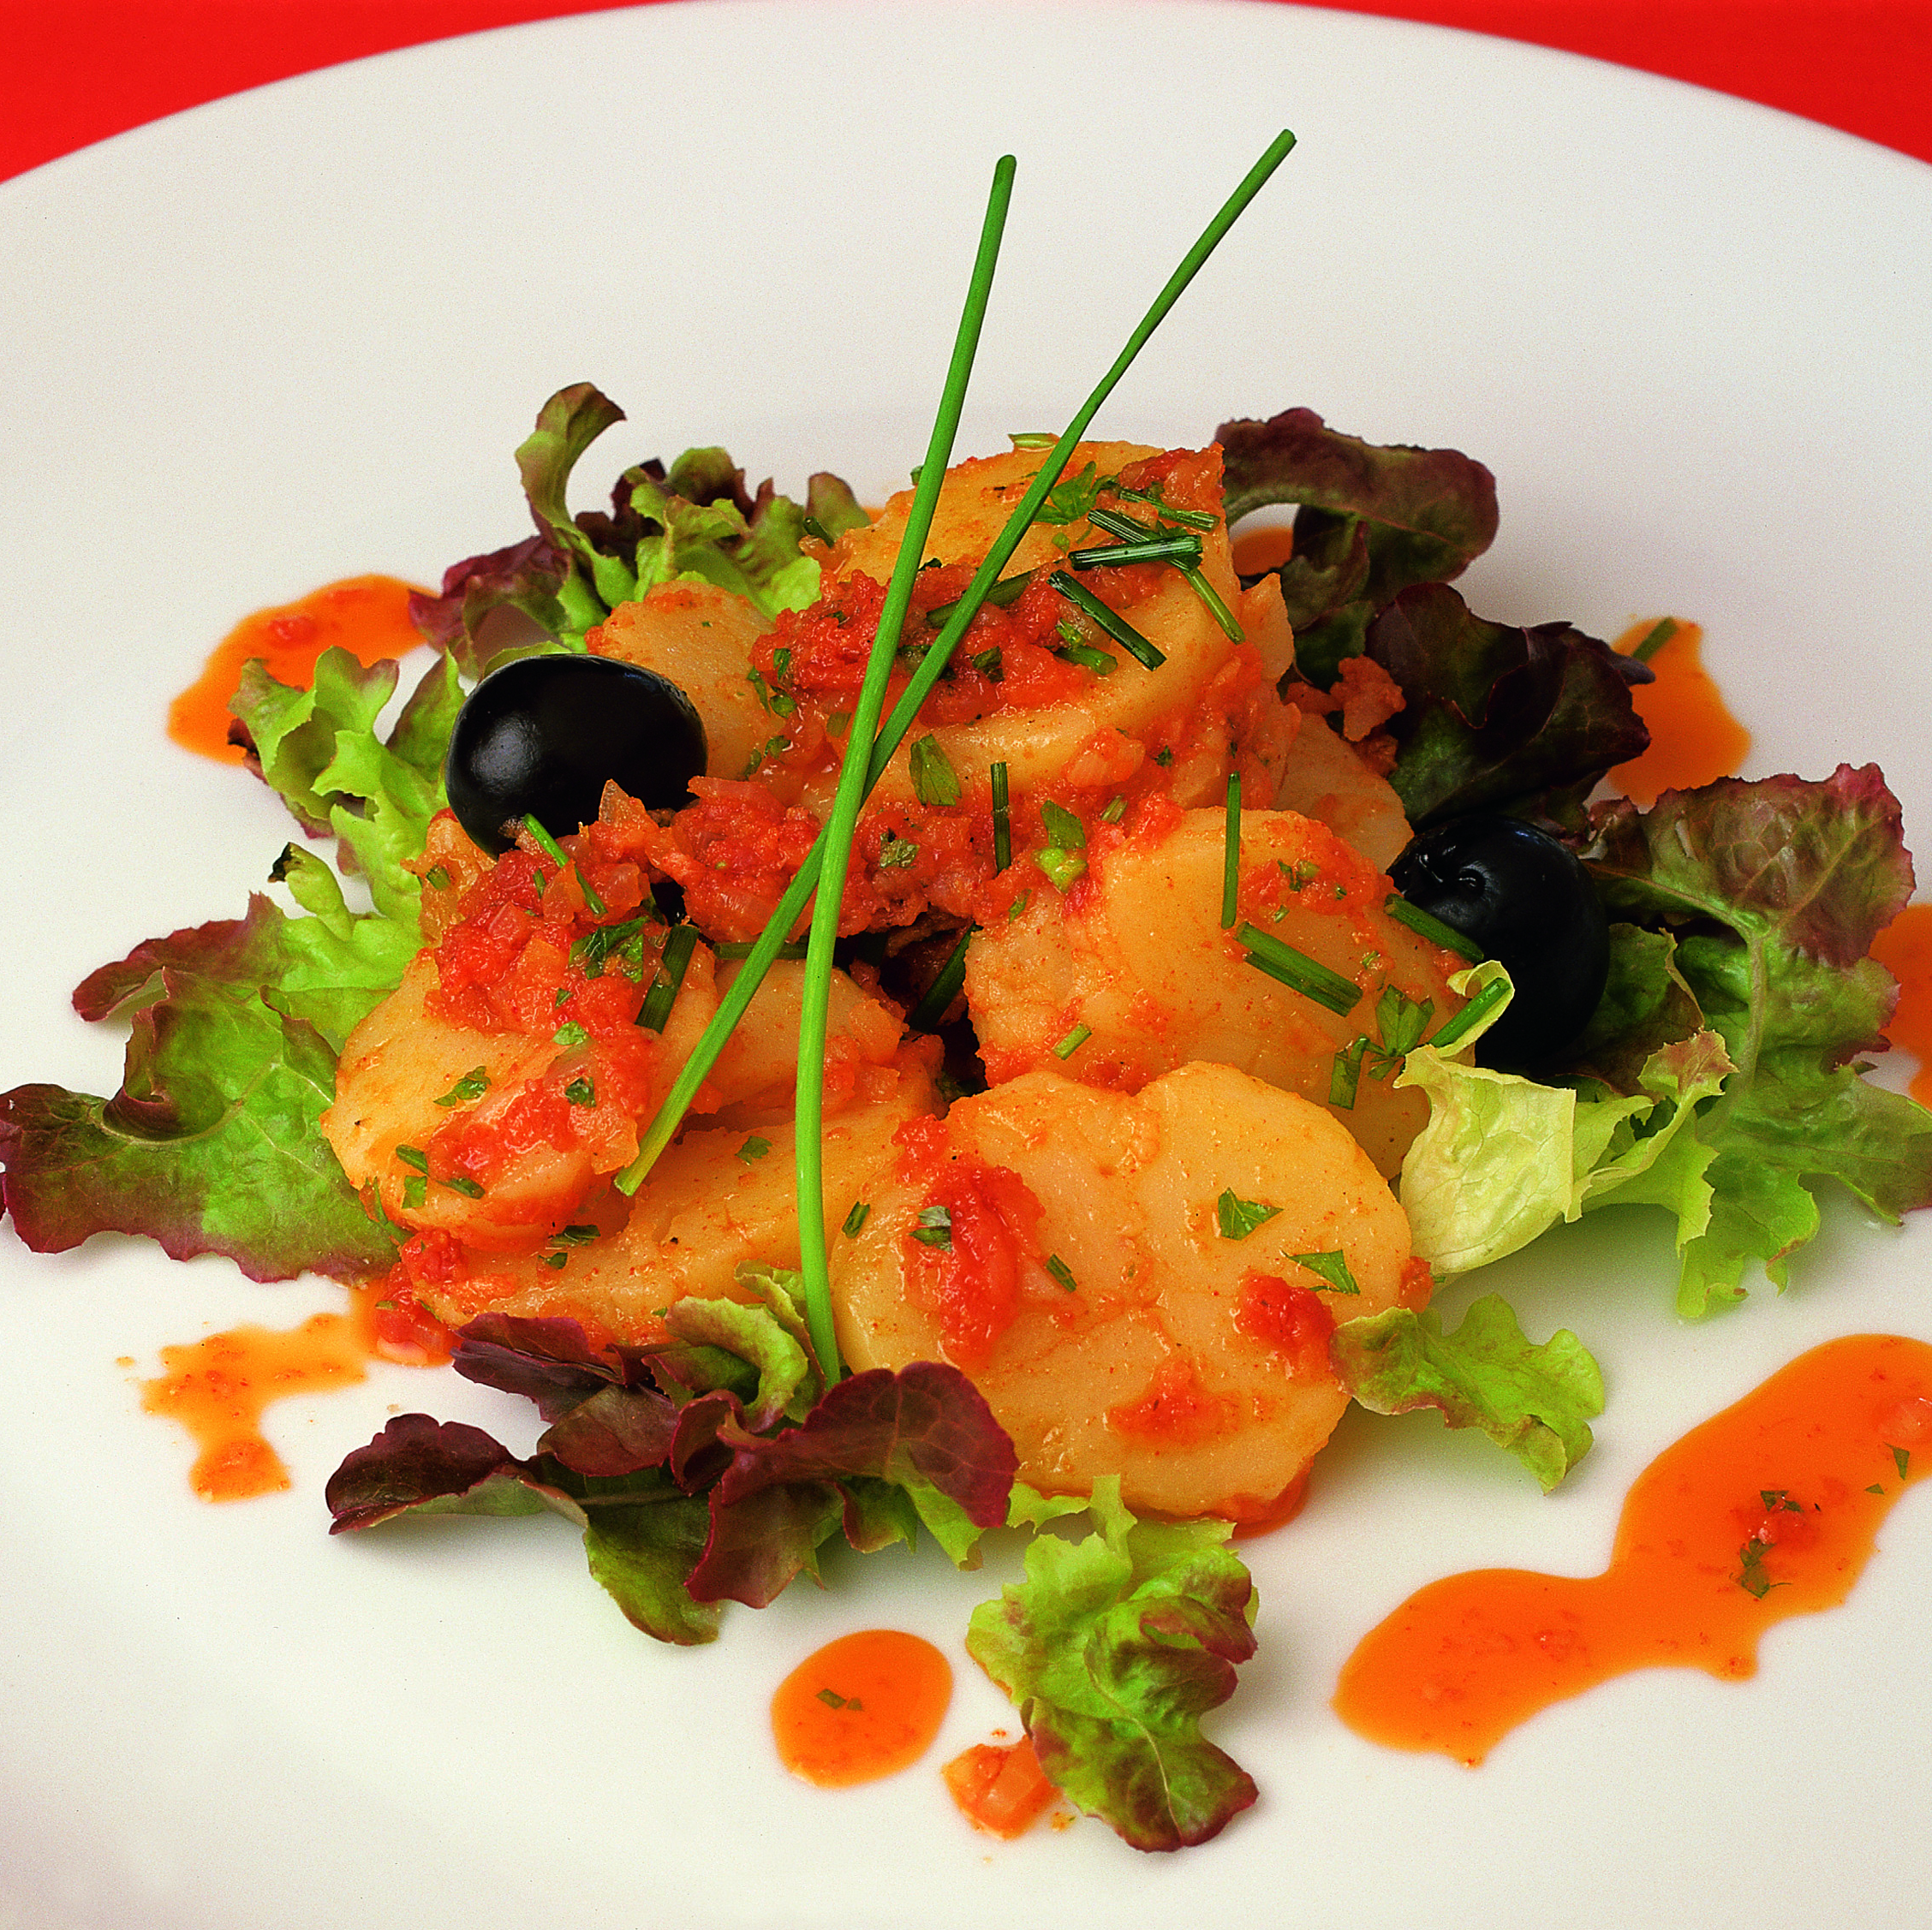 Ensalada de patata con sobrasada (NUEVA) - Recetas - Gastronomía - Islas Baleares - Productos agroalimentarios, denominaciones de origen y gastronomía balear